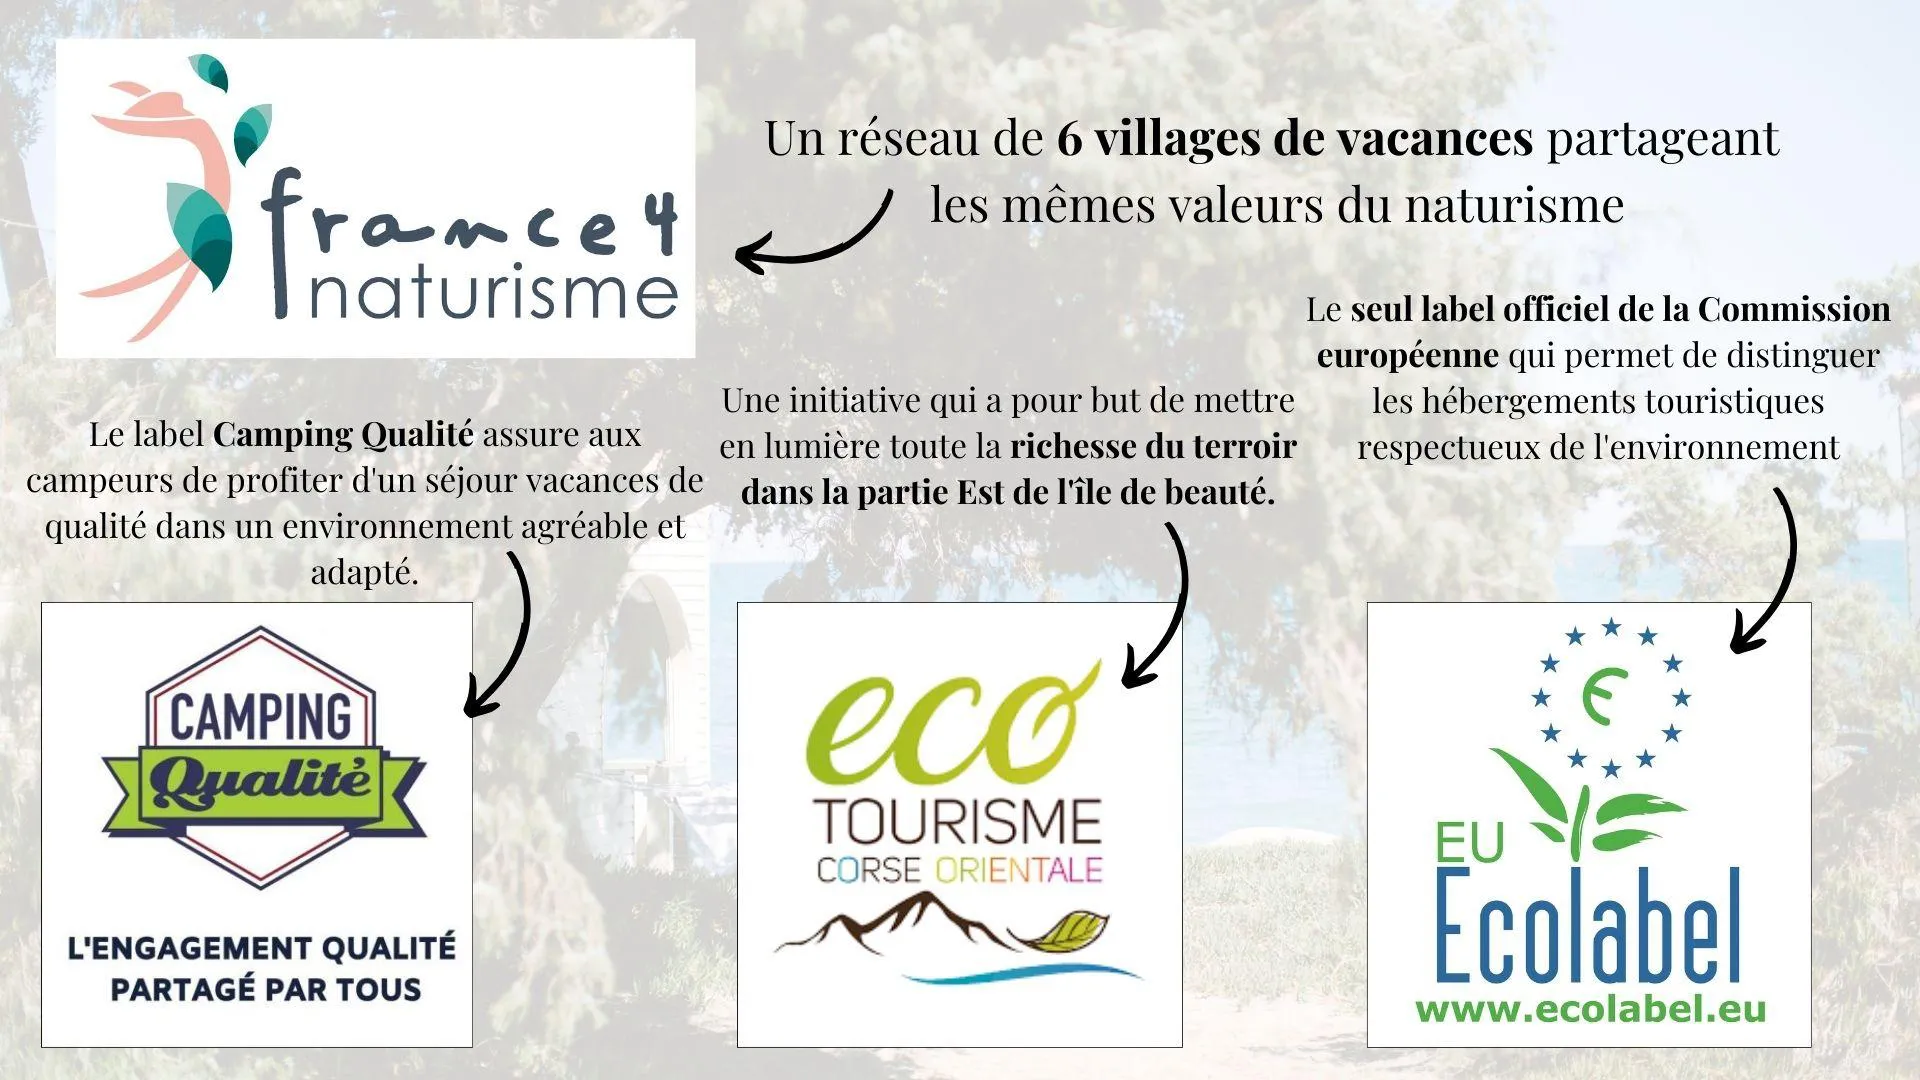 Images de l'Ecolabel, Qualité Tourisme, Ecotourisme, France 4 Naturisme